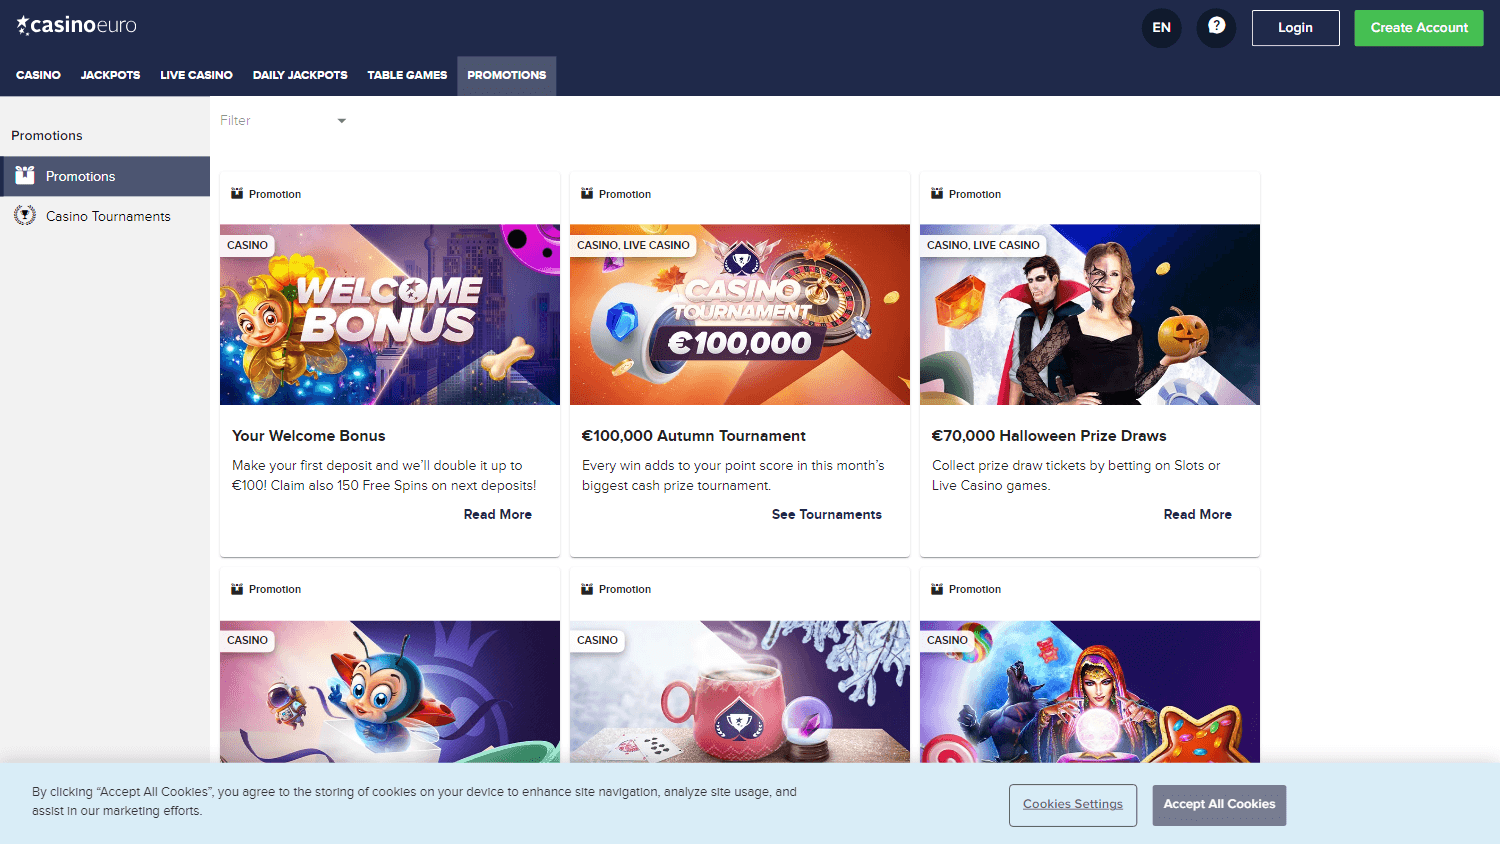 casinoeuro_promotions_desktop